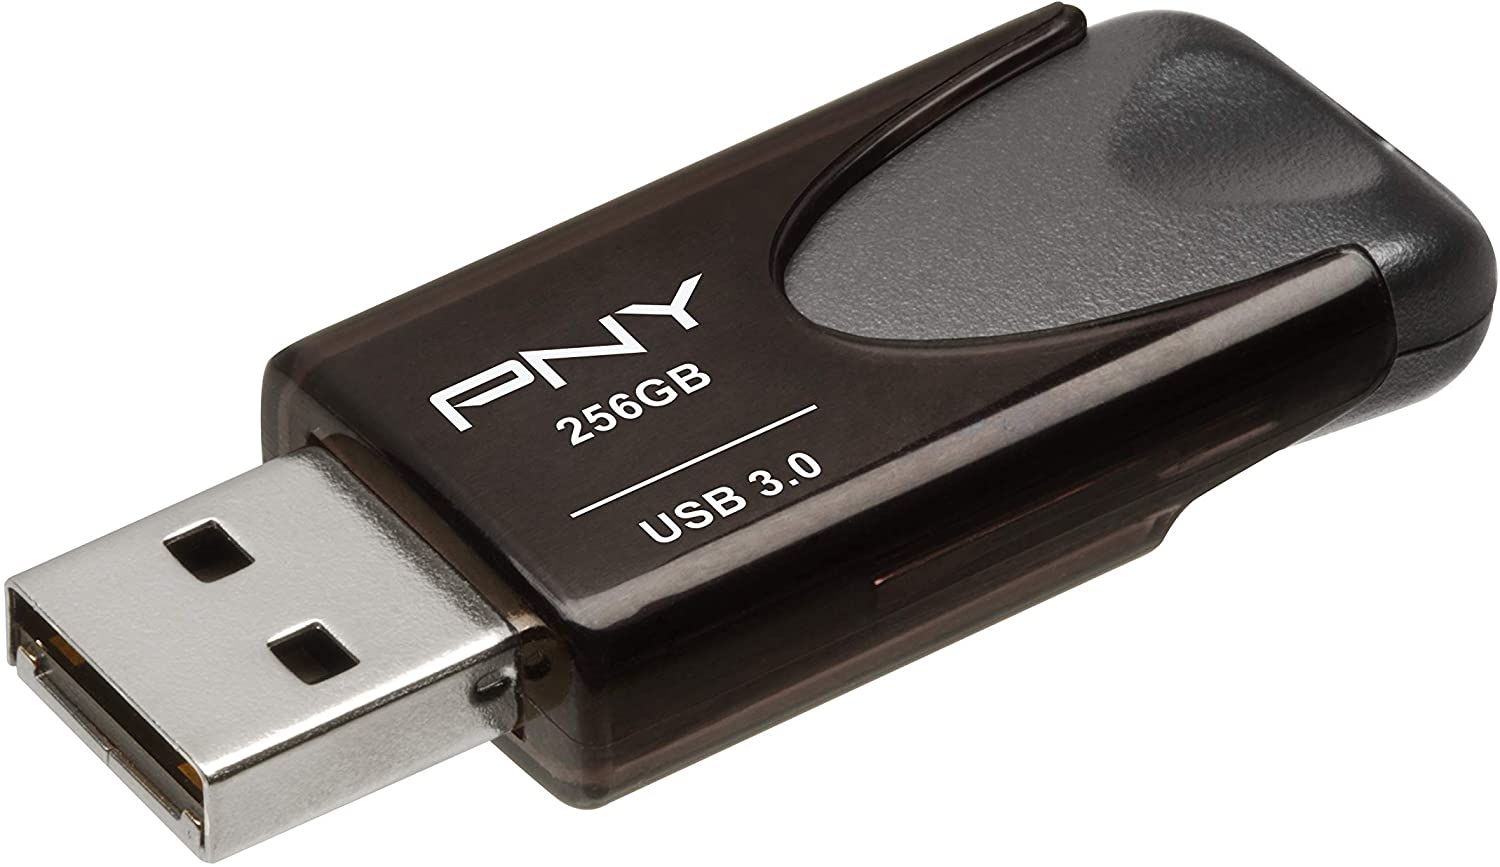 Pny 256 Gb Flash Drive